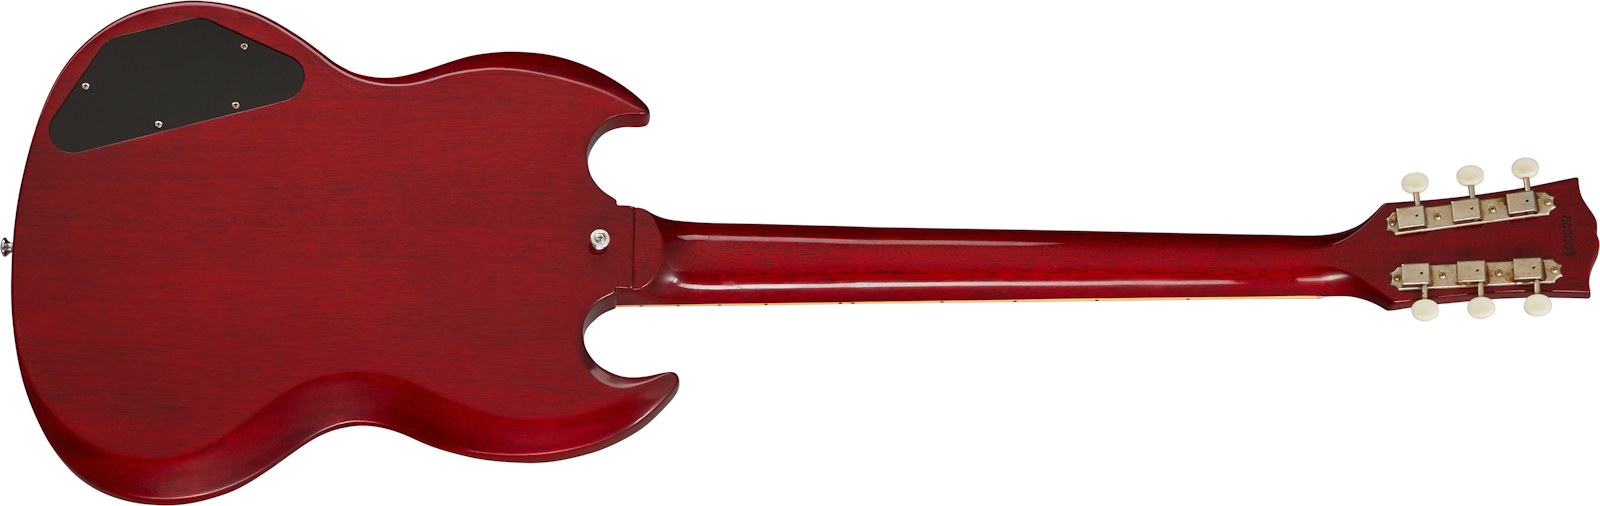 Gibson Custom Shop Sg Special 1963 Reissue 2p90 Ht Rw - Vos Cherry Red - Guitarra eléctrica de doble corte. - Variation 1